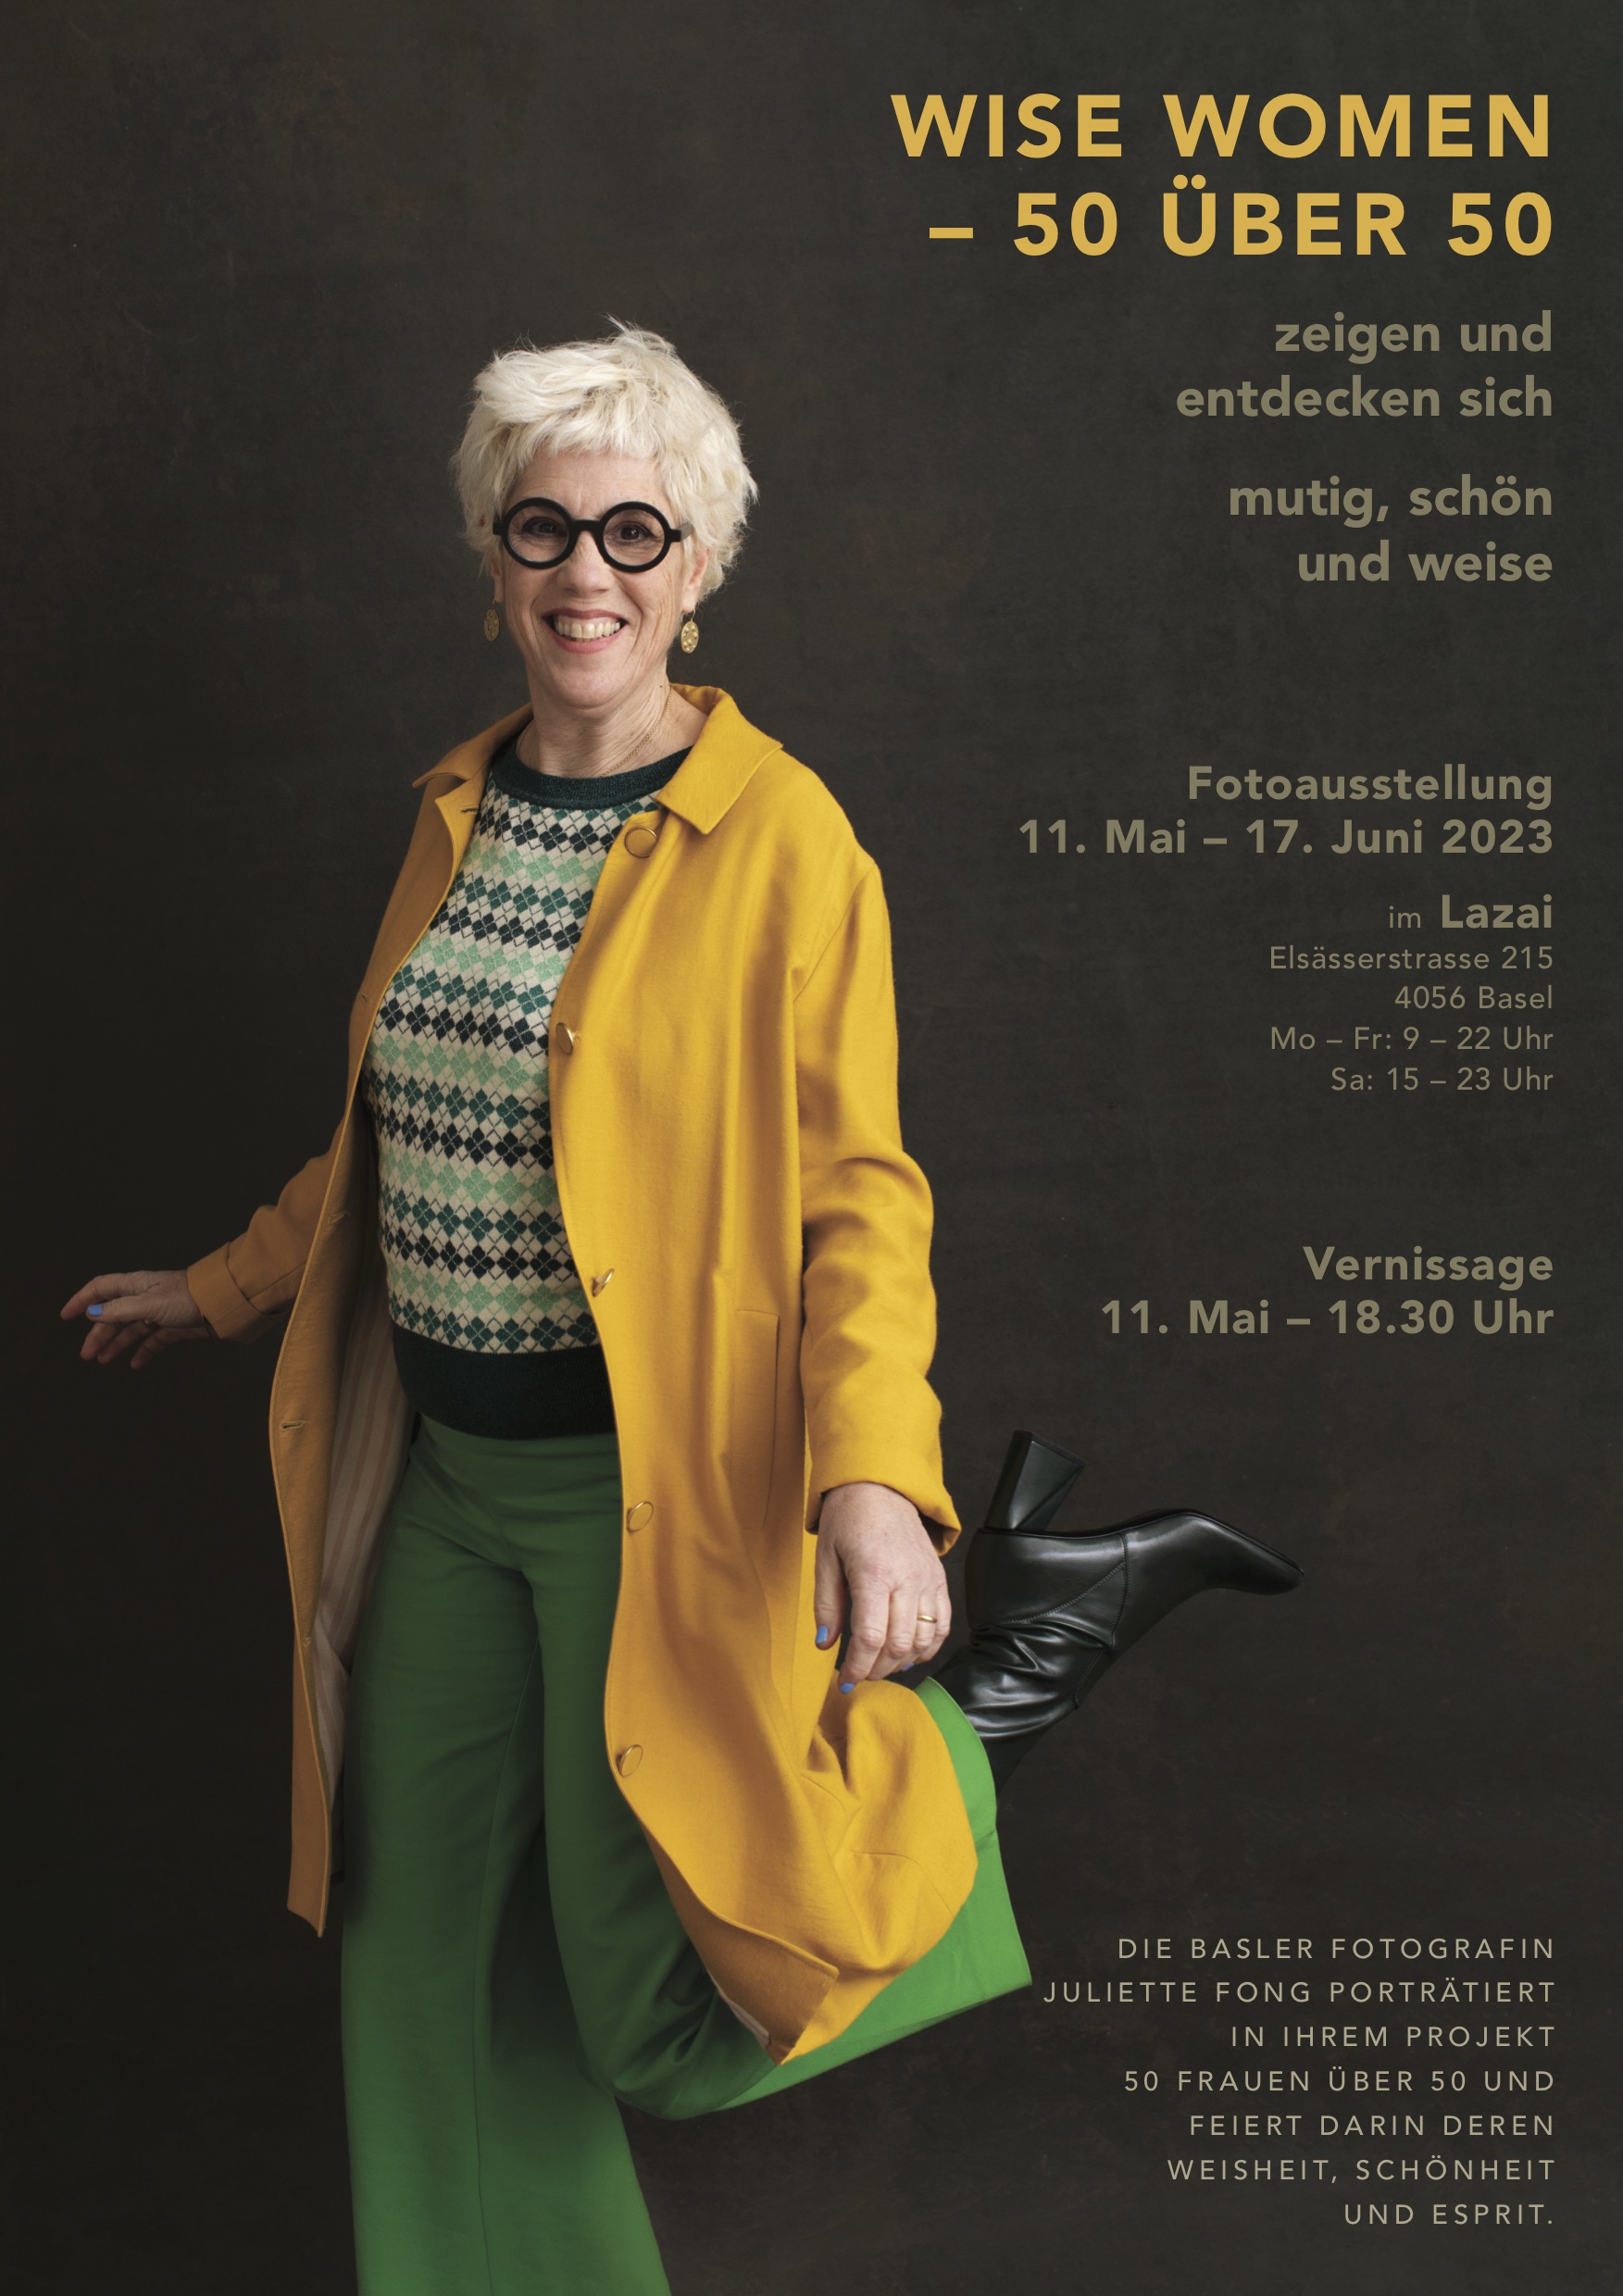 Ausstellung Wise Women 50 über 50 in Basel 2023